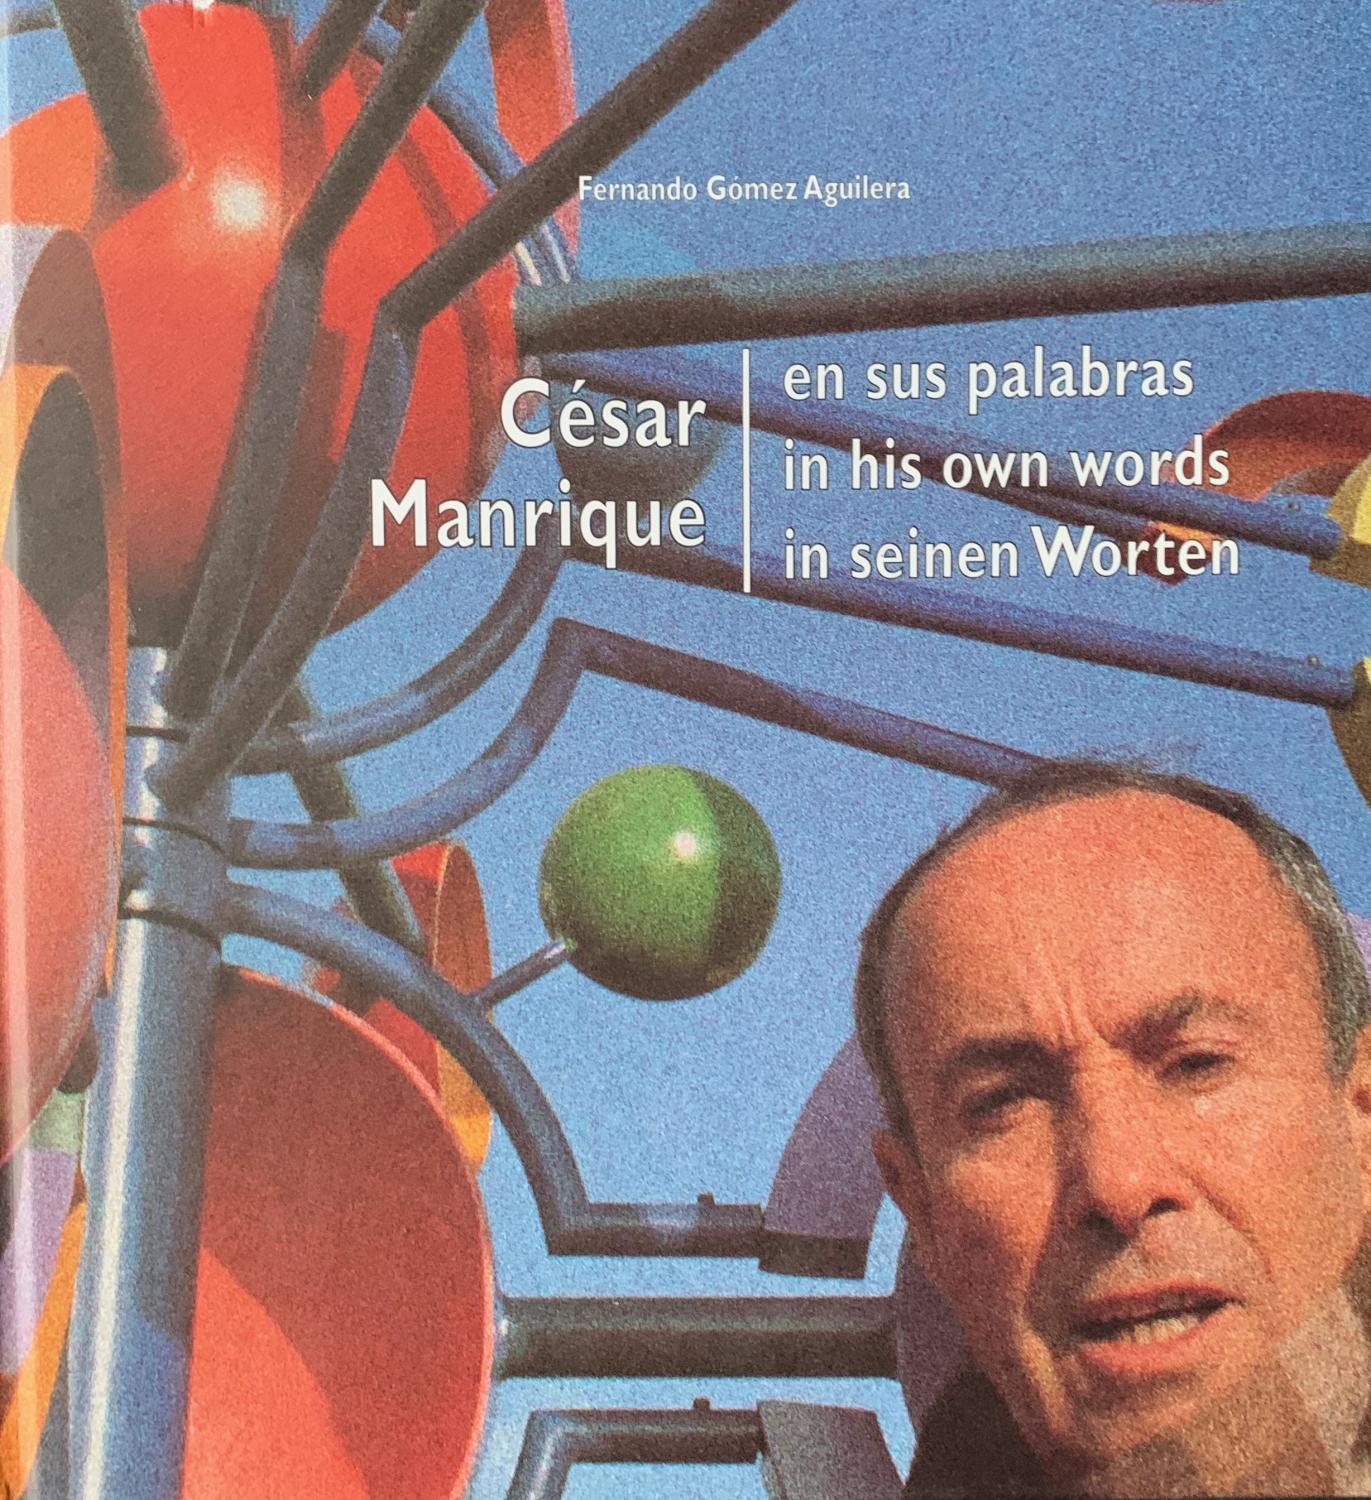 Manrique, César. en sus palabras / In his own words / In seinen Worten.